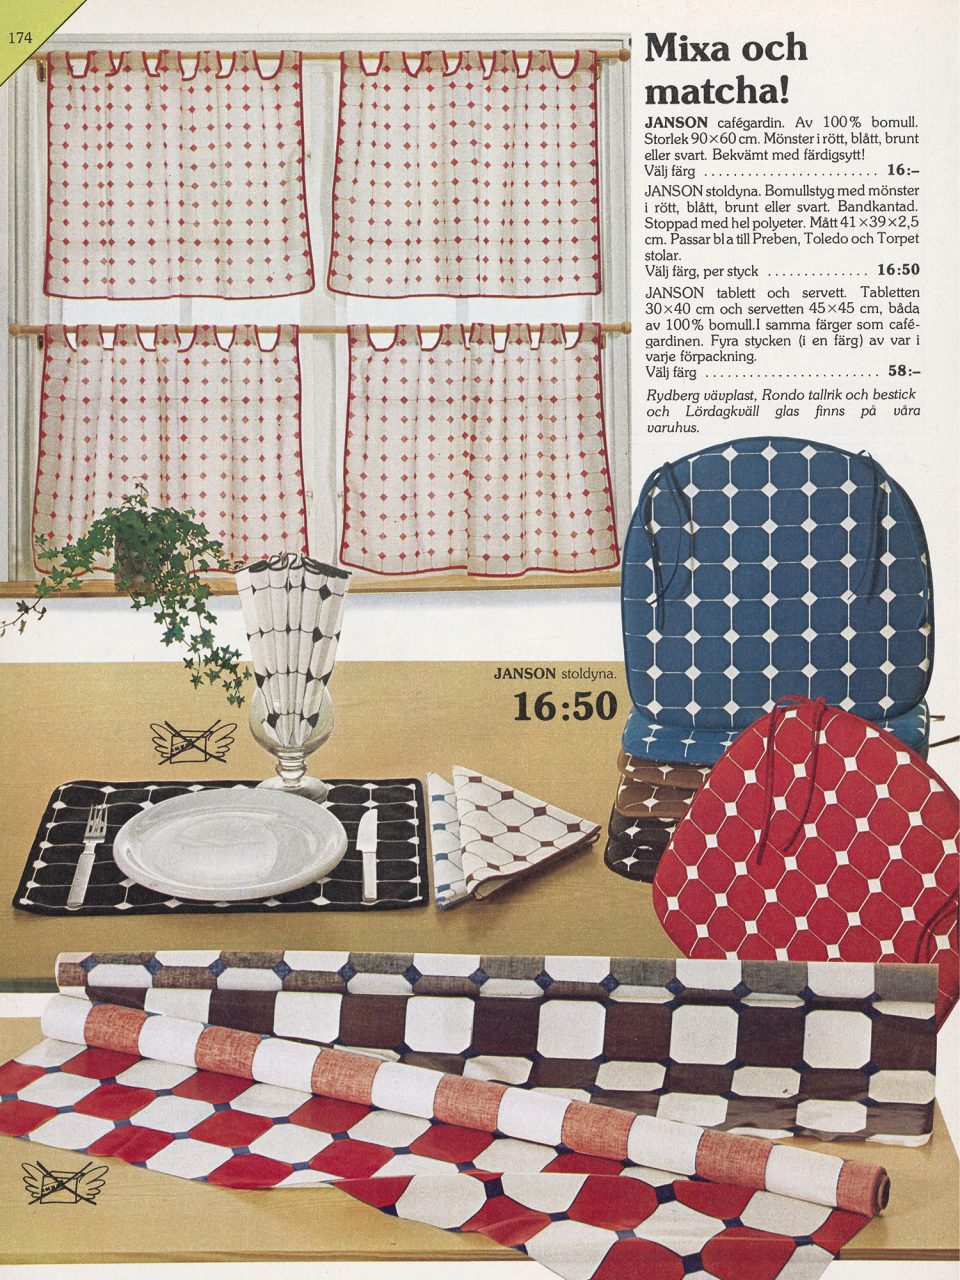 Sida i IKEA katalogen 1978. Under rubriken Mixa och matcha syns bl.a. gardiner, dukar och sittdynor.